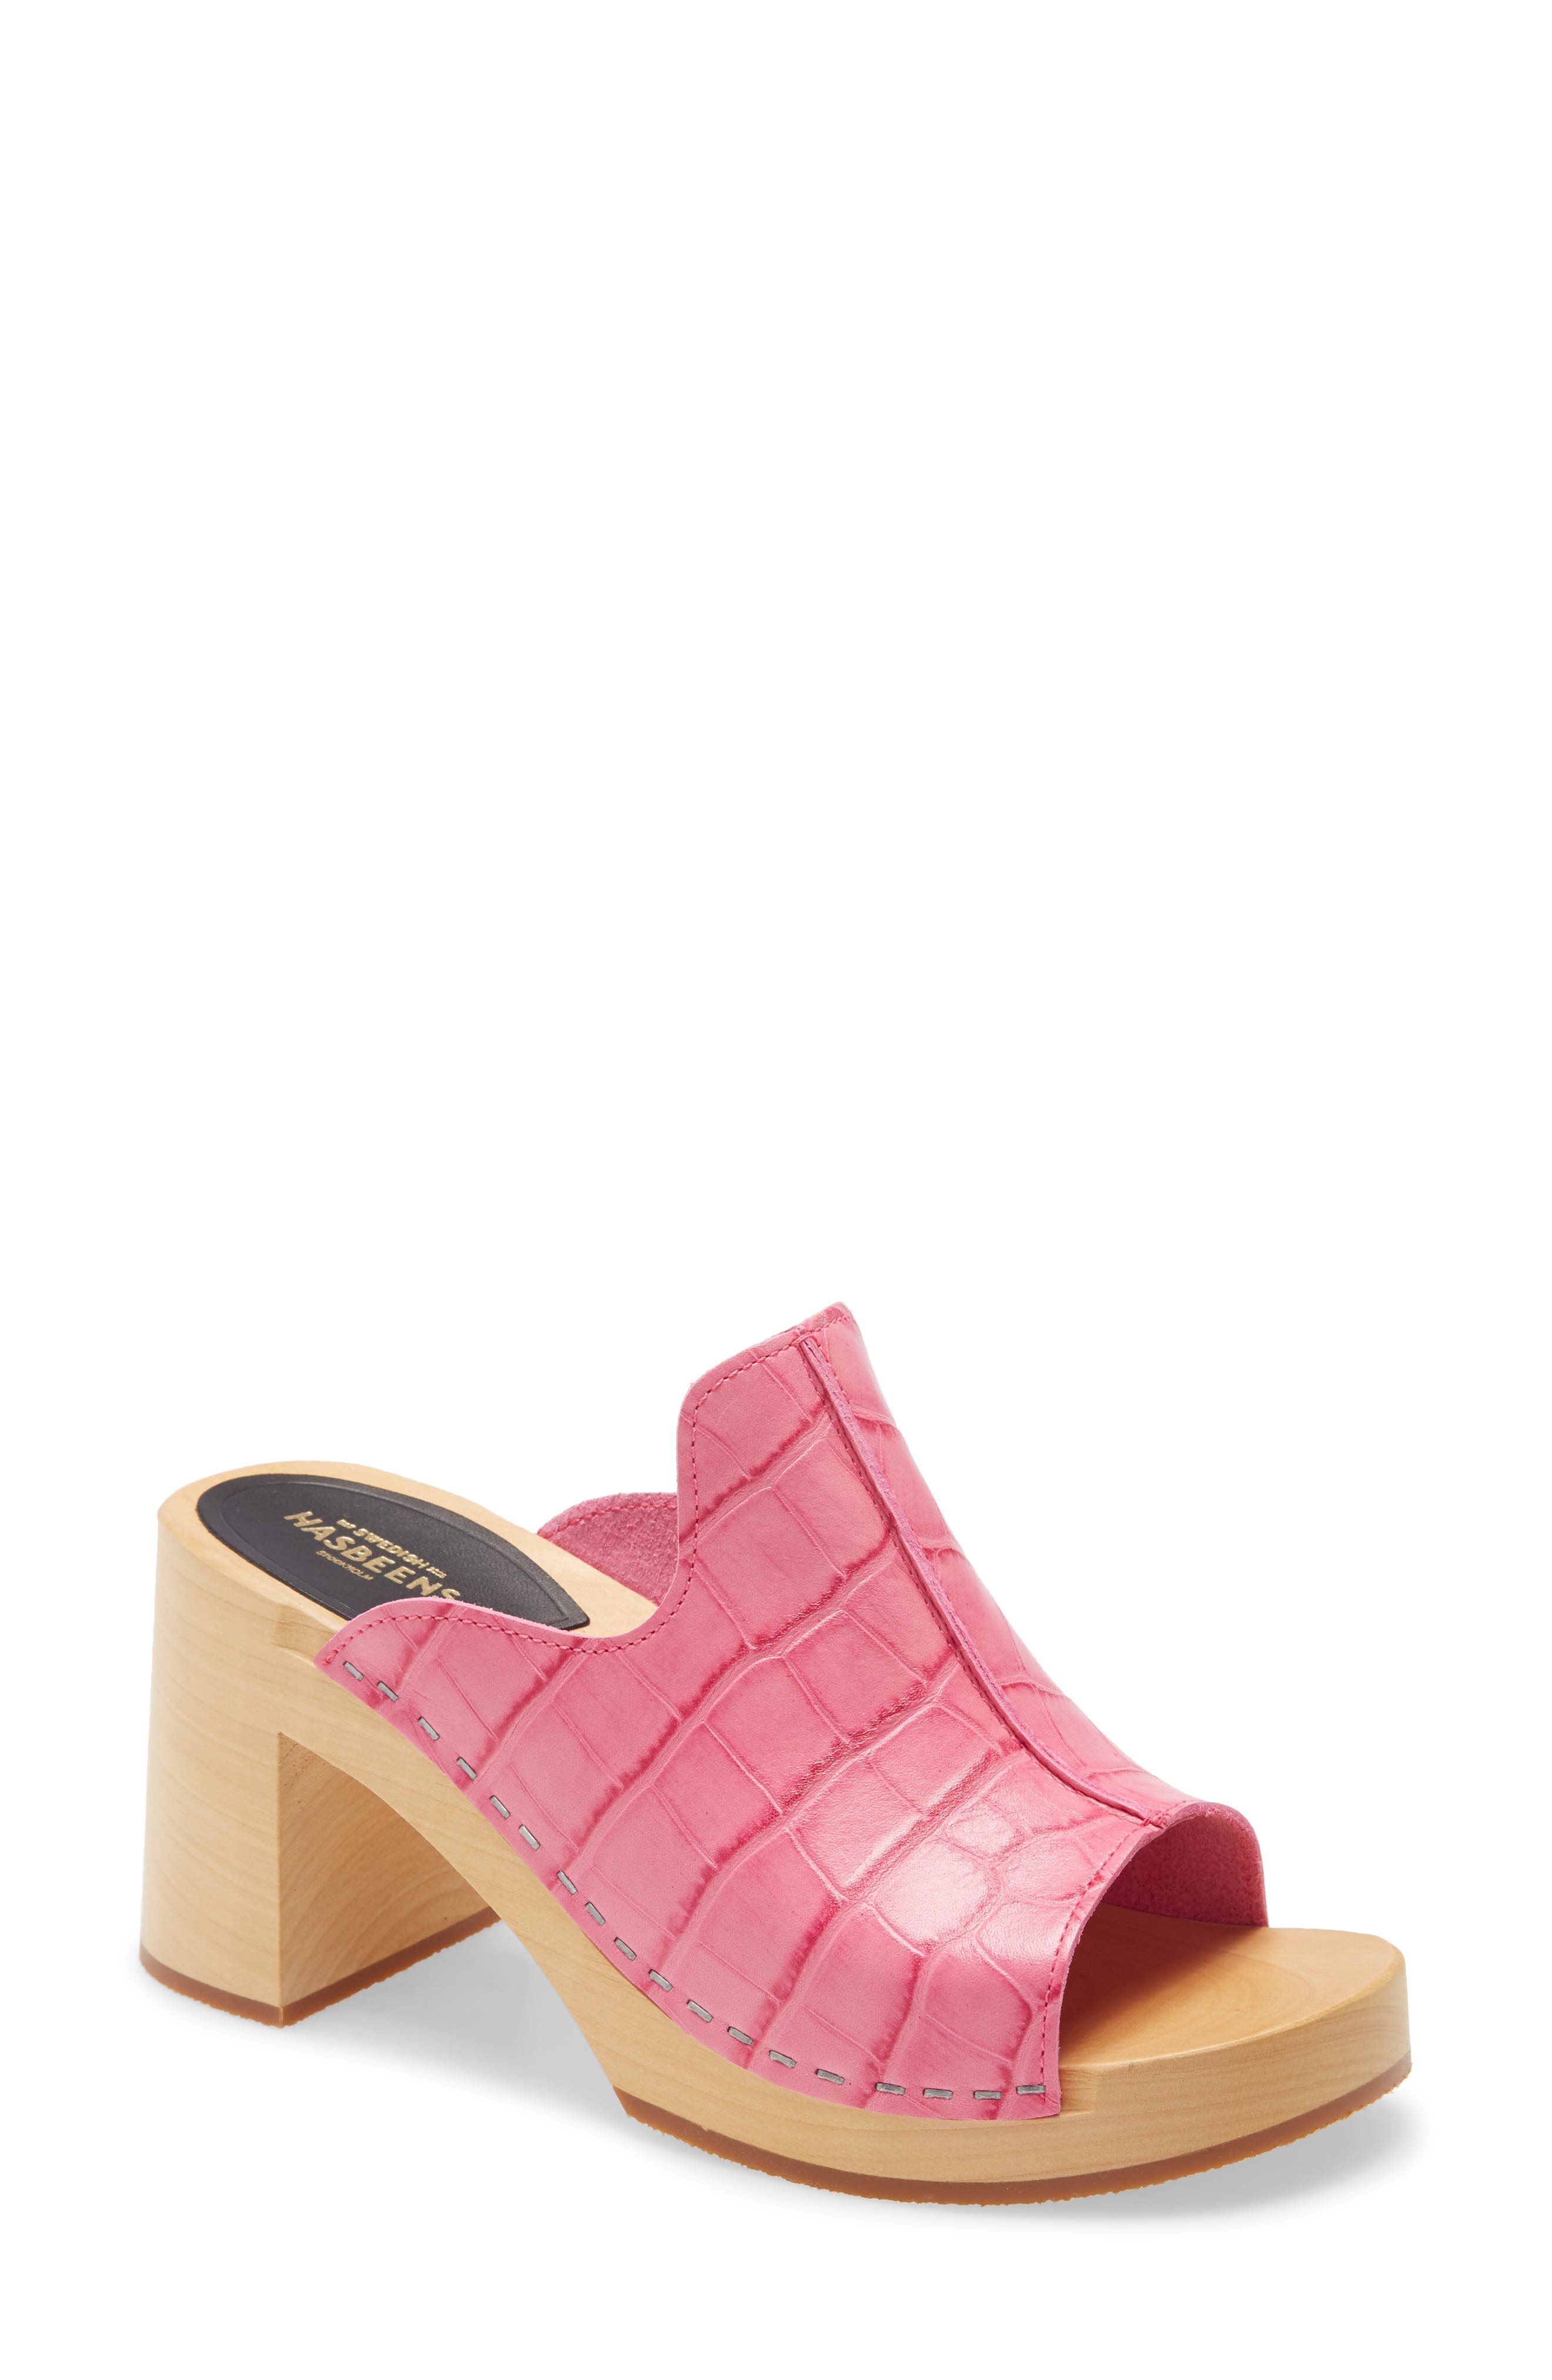 nordstrom pink sandals